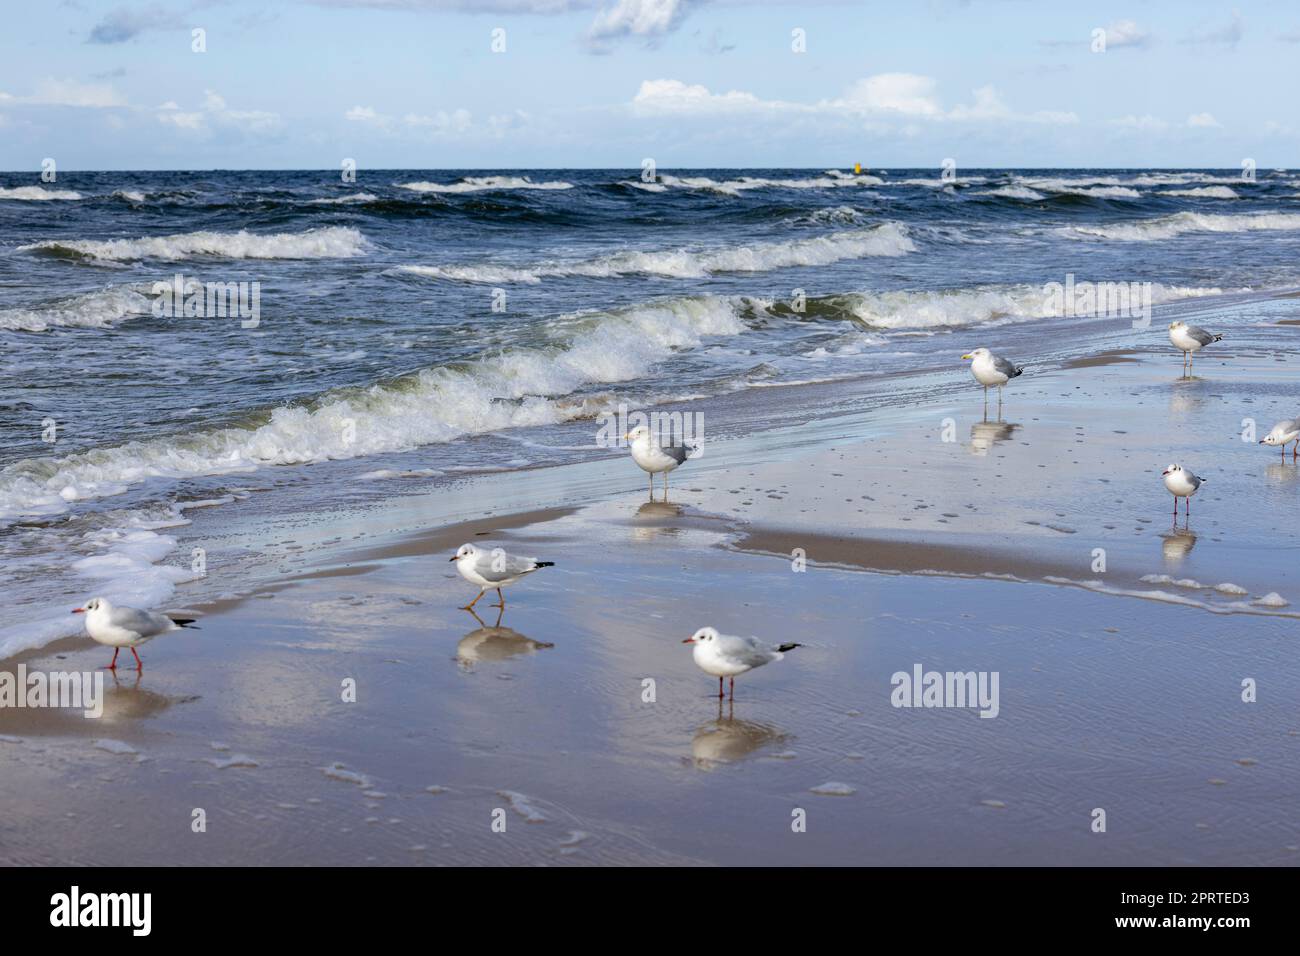 Bellissimo paesaggio sul mare, una spiaggia vuota, le acque schiumose del Mar Baltico, gabbiani che camminano sulla sabbia, Wyspa Wolin, Miedzyzdroje, Polonia Foto Stock